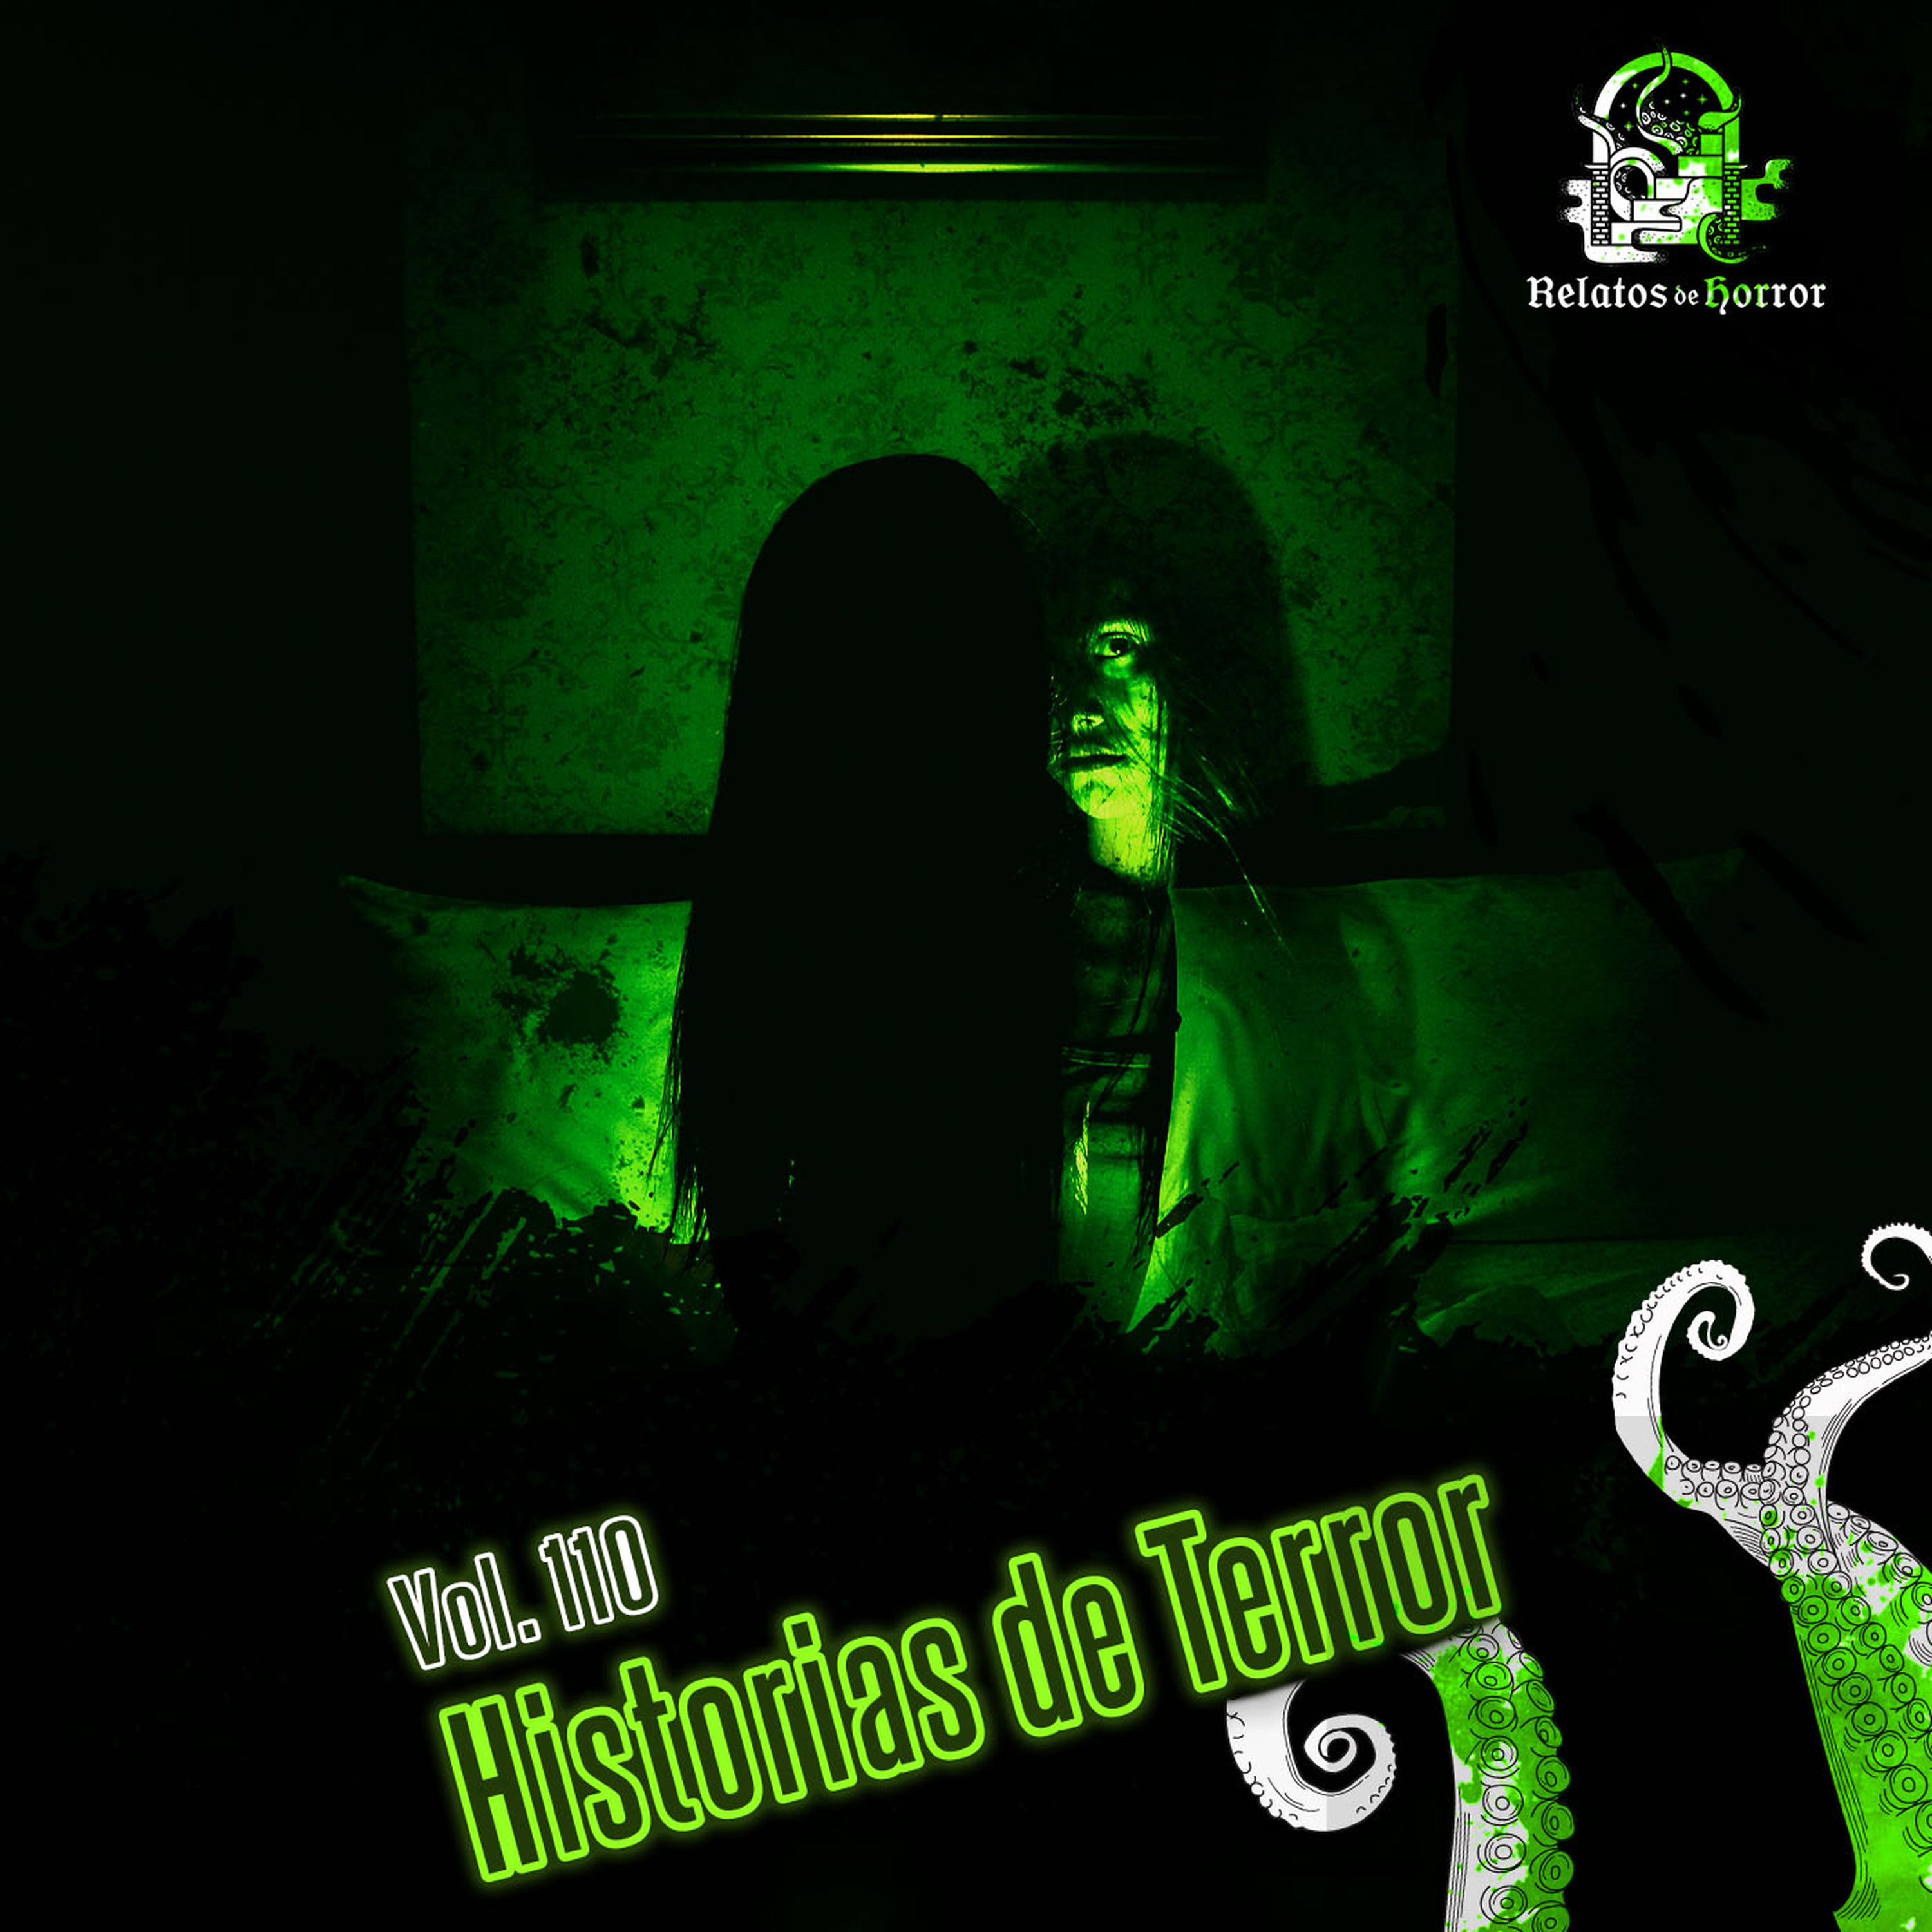 Historias De Terror Vol 110 Relatos De Horror Relatos De Horror Historias De Terror 0020